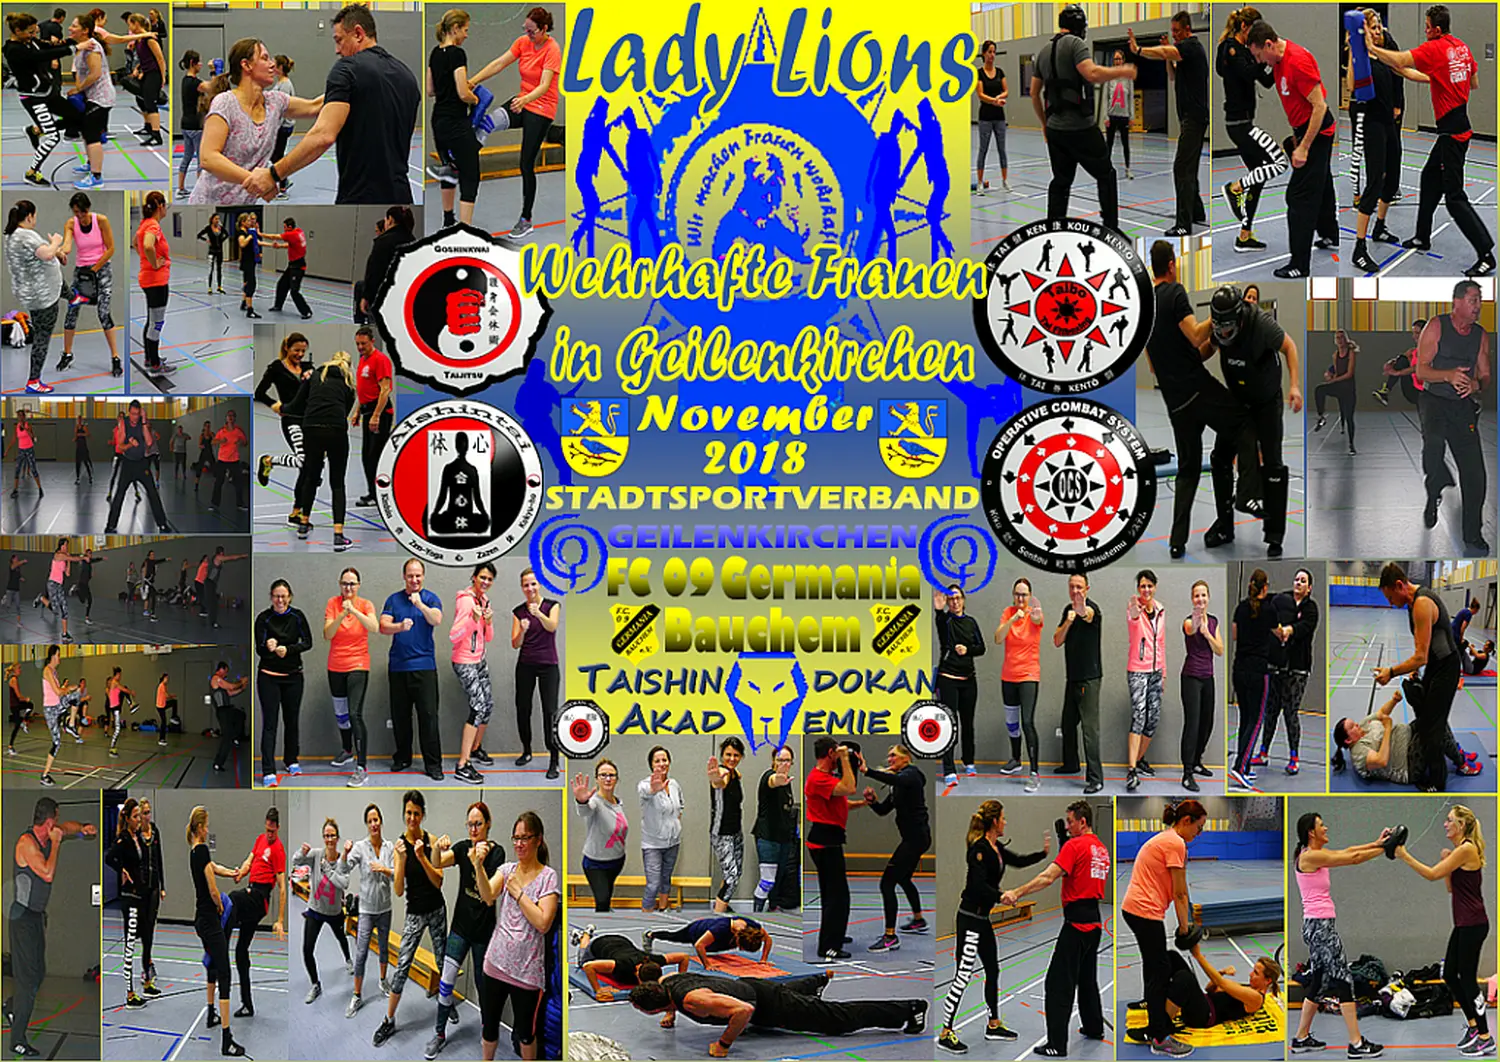 FrauenSB SV LadyLions RotWeissFrelenberg Sept2017 Collage